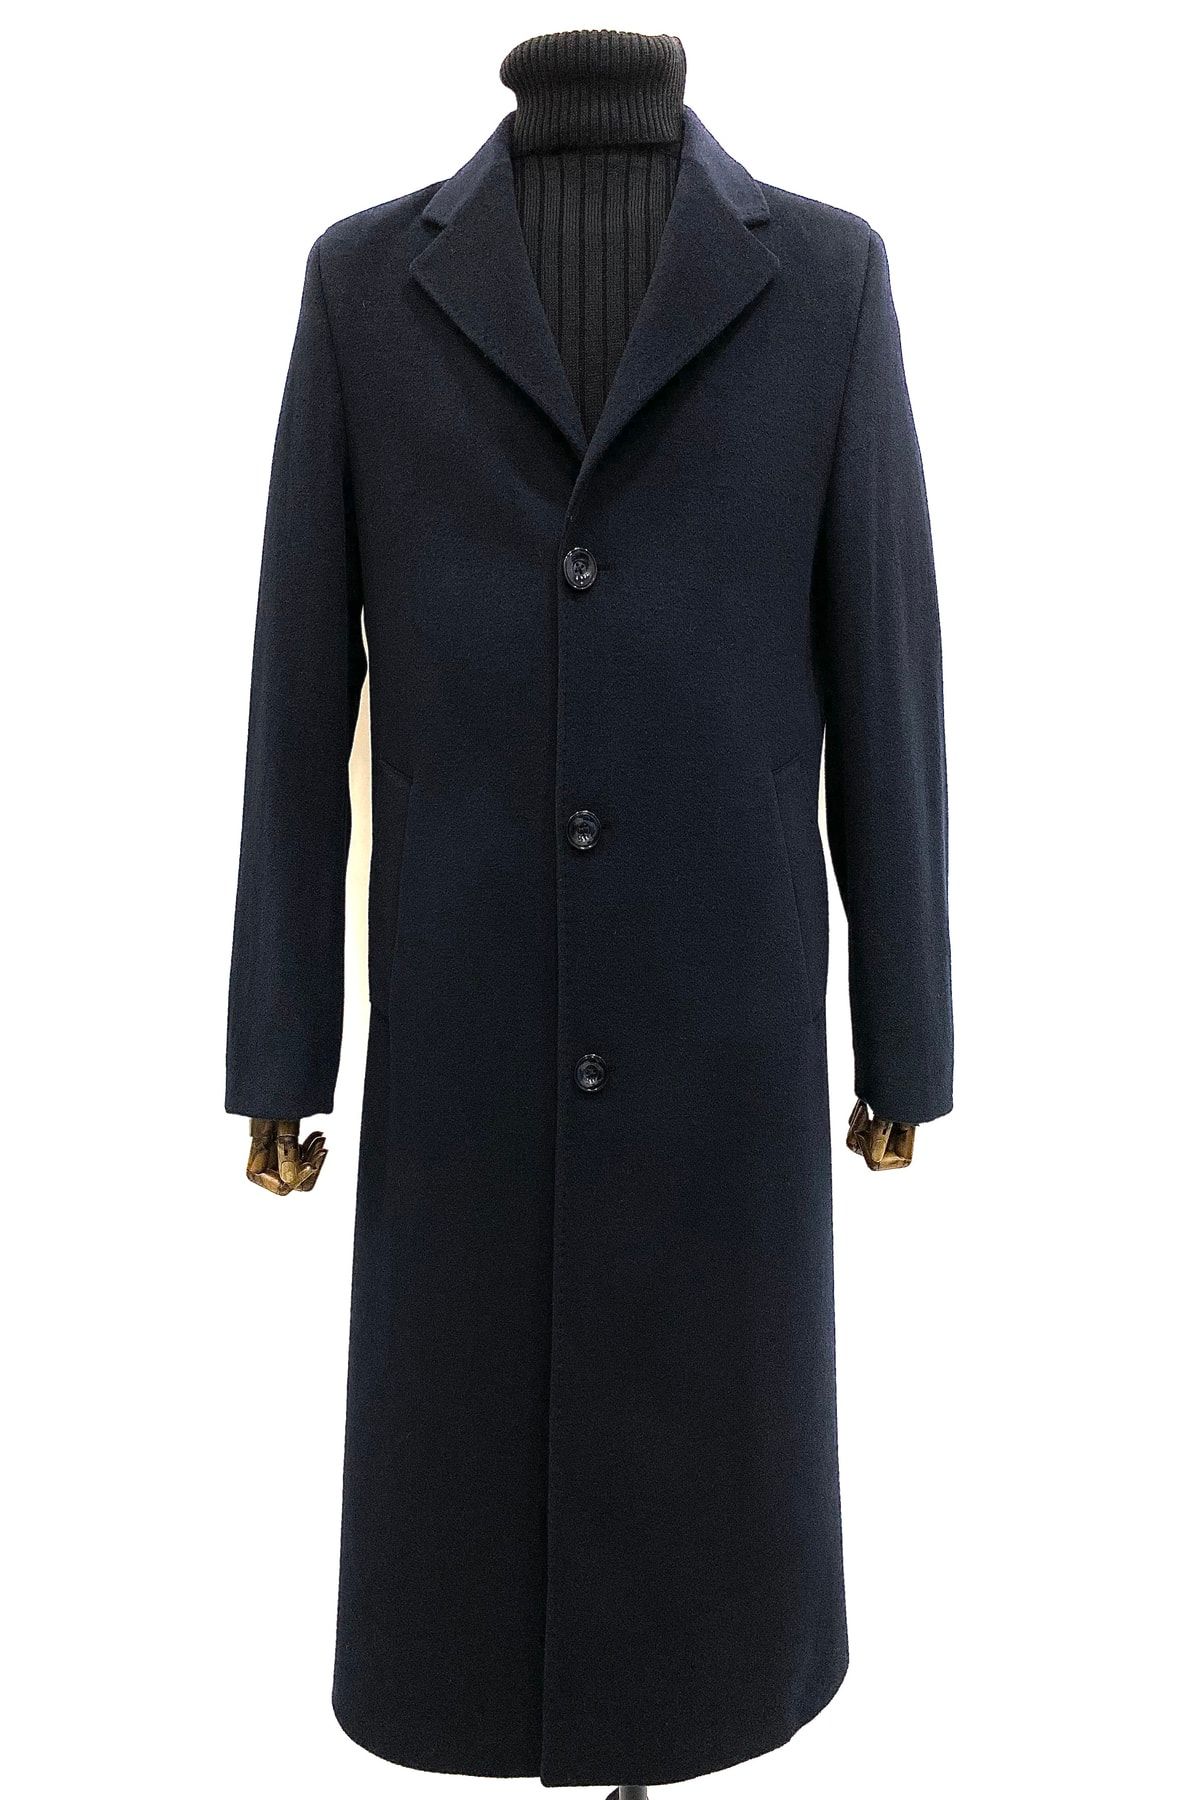 ŞAN GİYİM Erkek Lacivert Ceket Yaka Uzun Palto